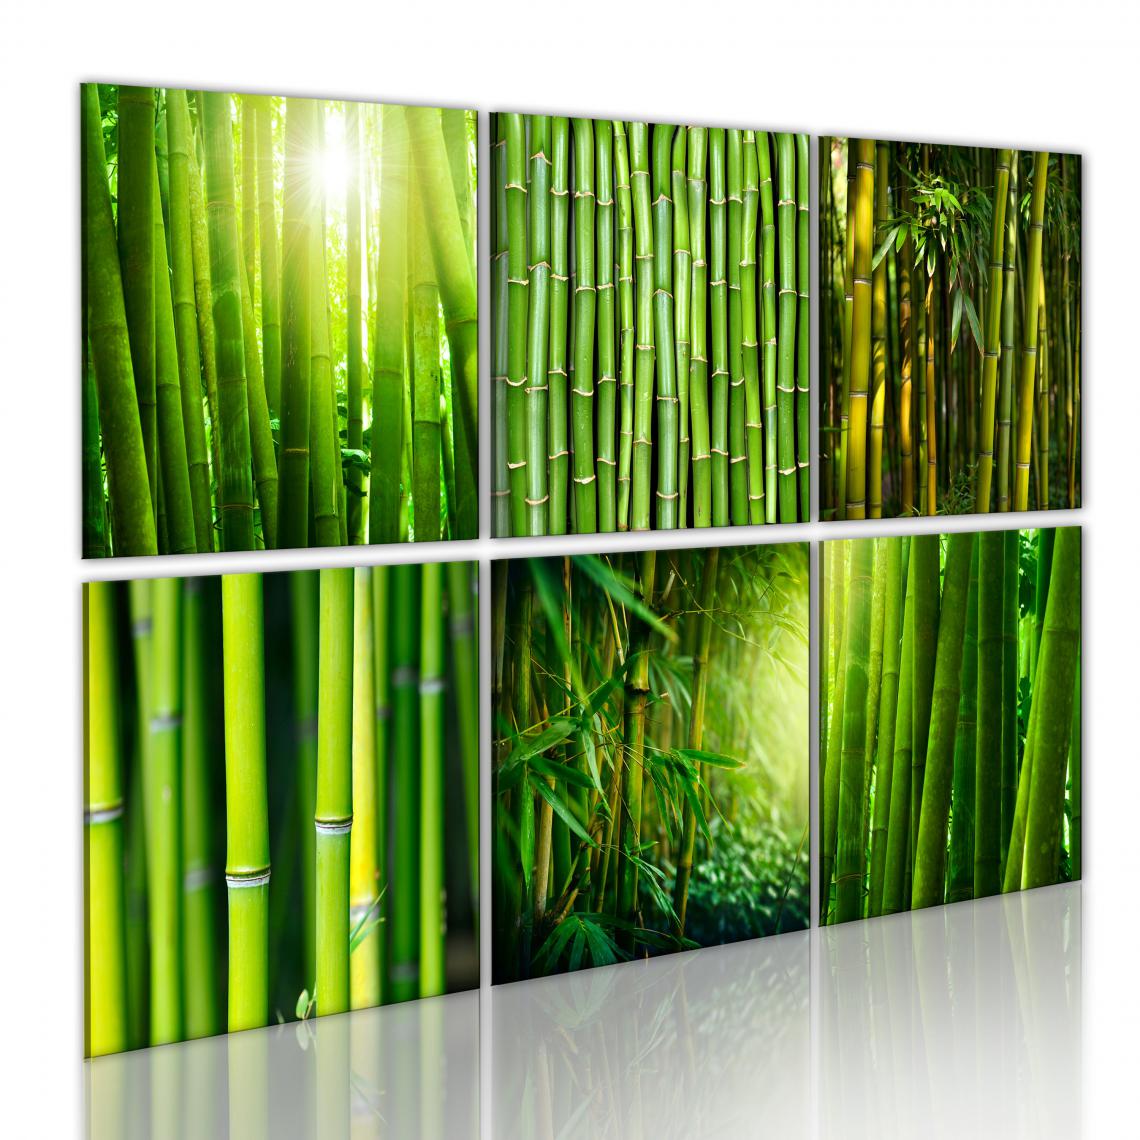 Decoshop26 - Tableau sur toile en 6 panneaux décoration murale image imprimée cadre en bois à suspendre Nombreux visages du bambou 120x80 cm 11_0008893 - Tableaux, peintures